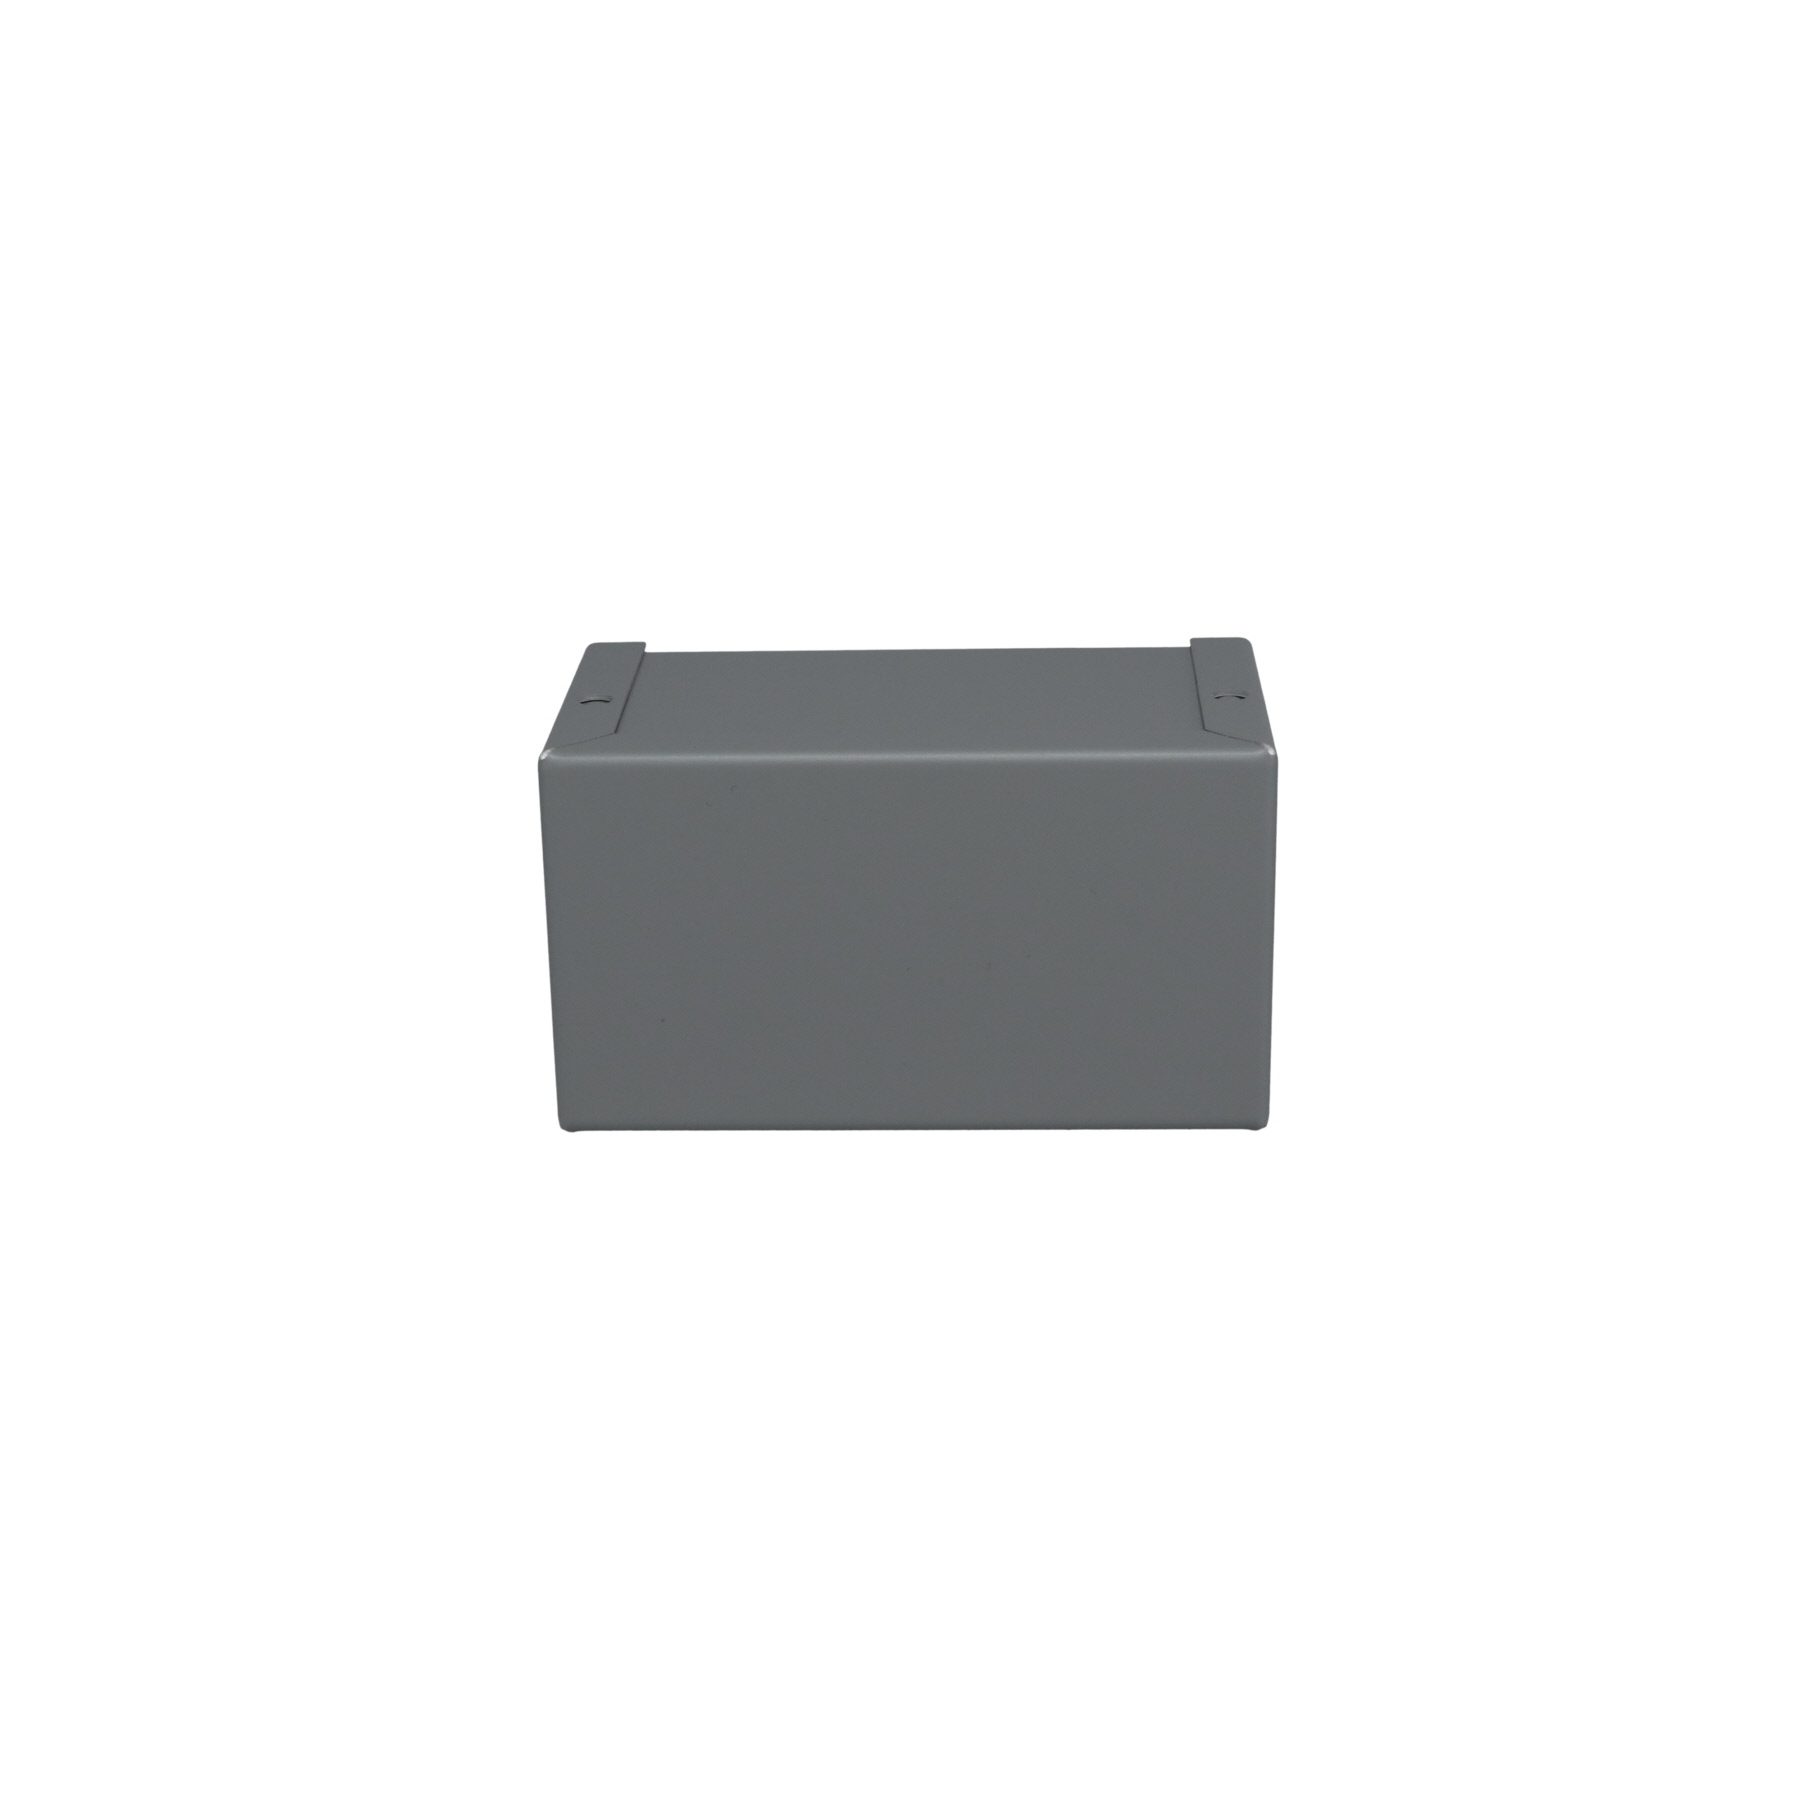 Minibox Small Metal Box Gray CU-2103-B